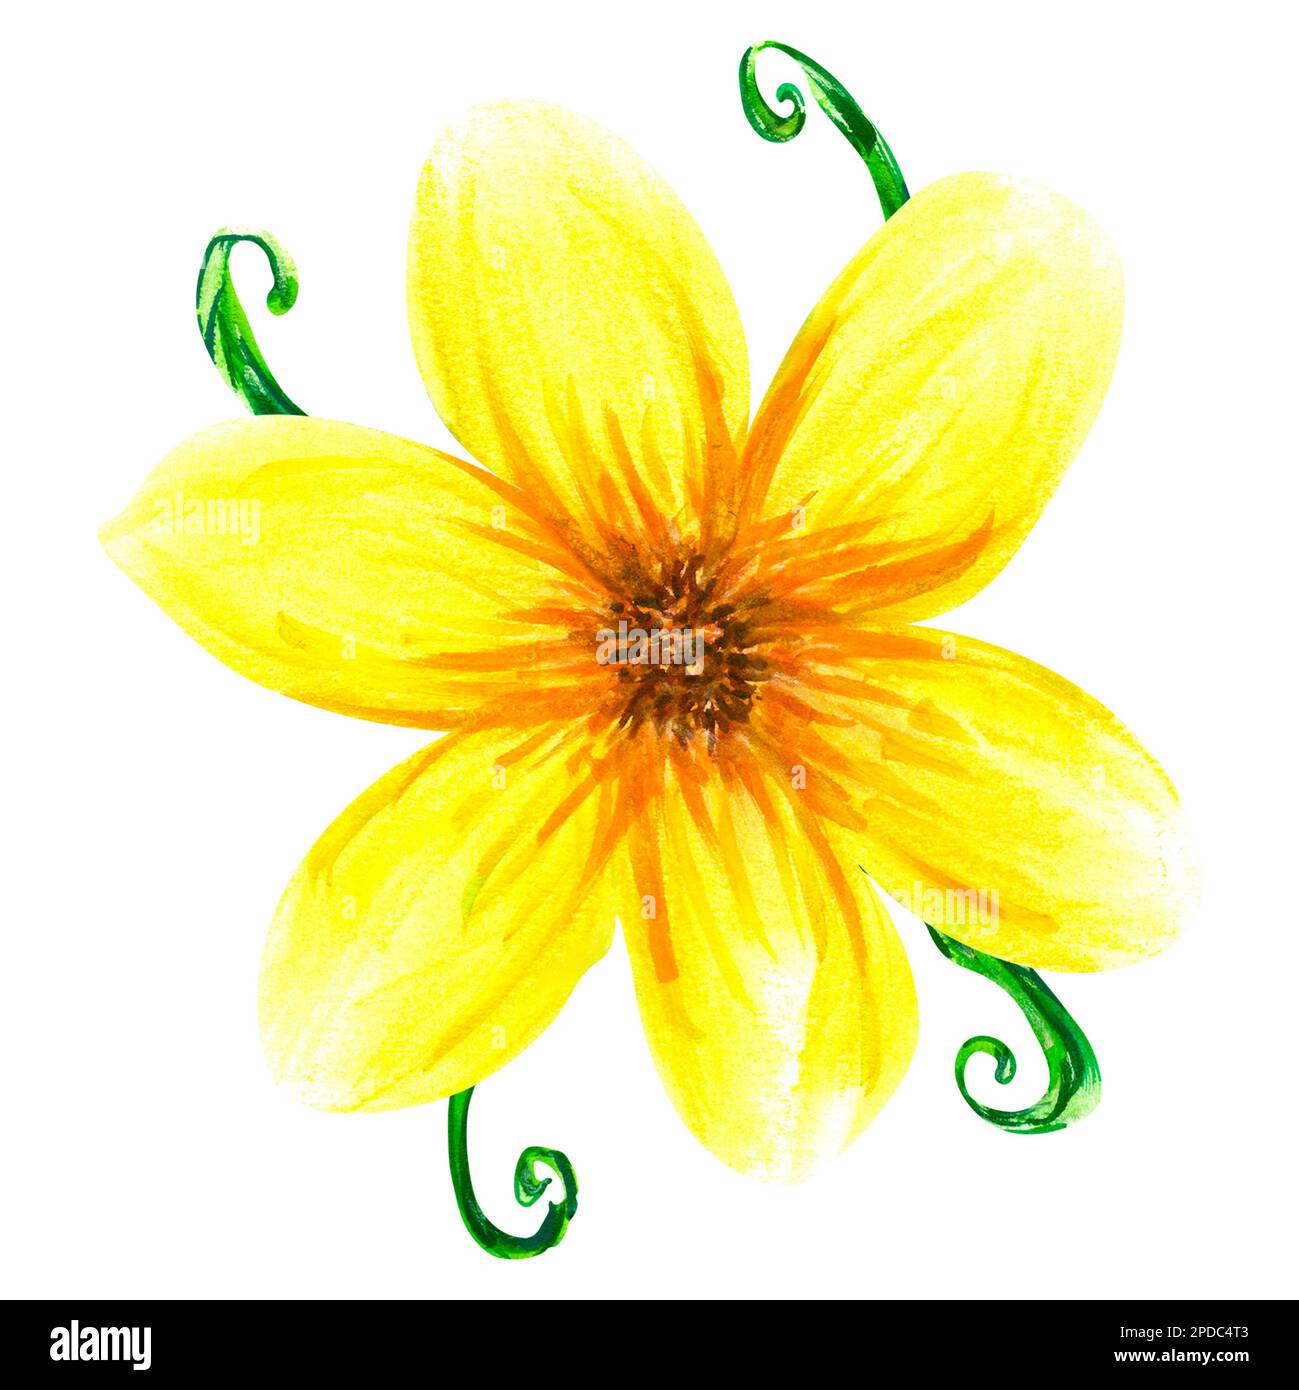 Aquarell abstrahiert helle sommergelbe Blumen und Blätter. Isolierte Objekte auf weißem Hintergrund. Gemalte Blumendekor. Stockfoto